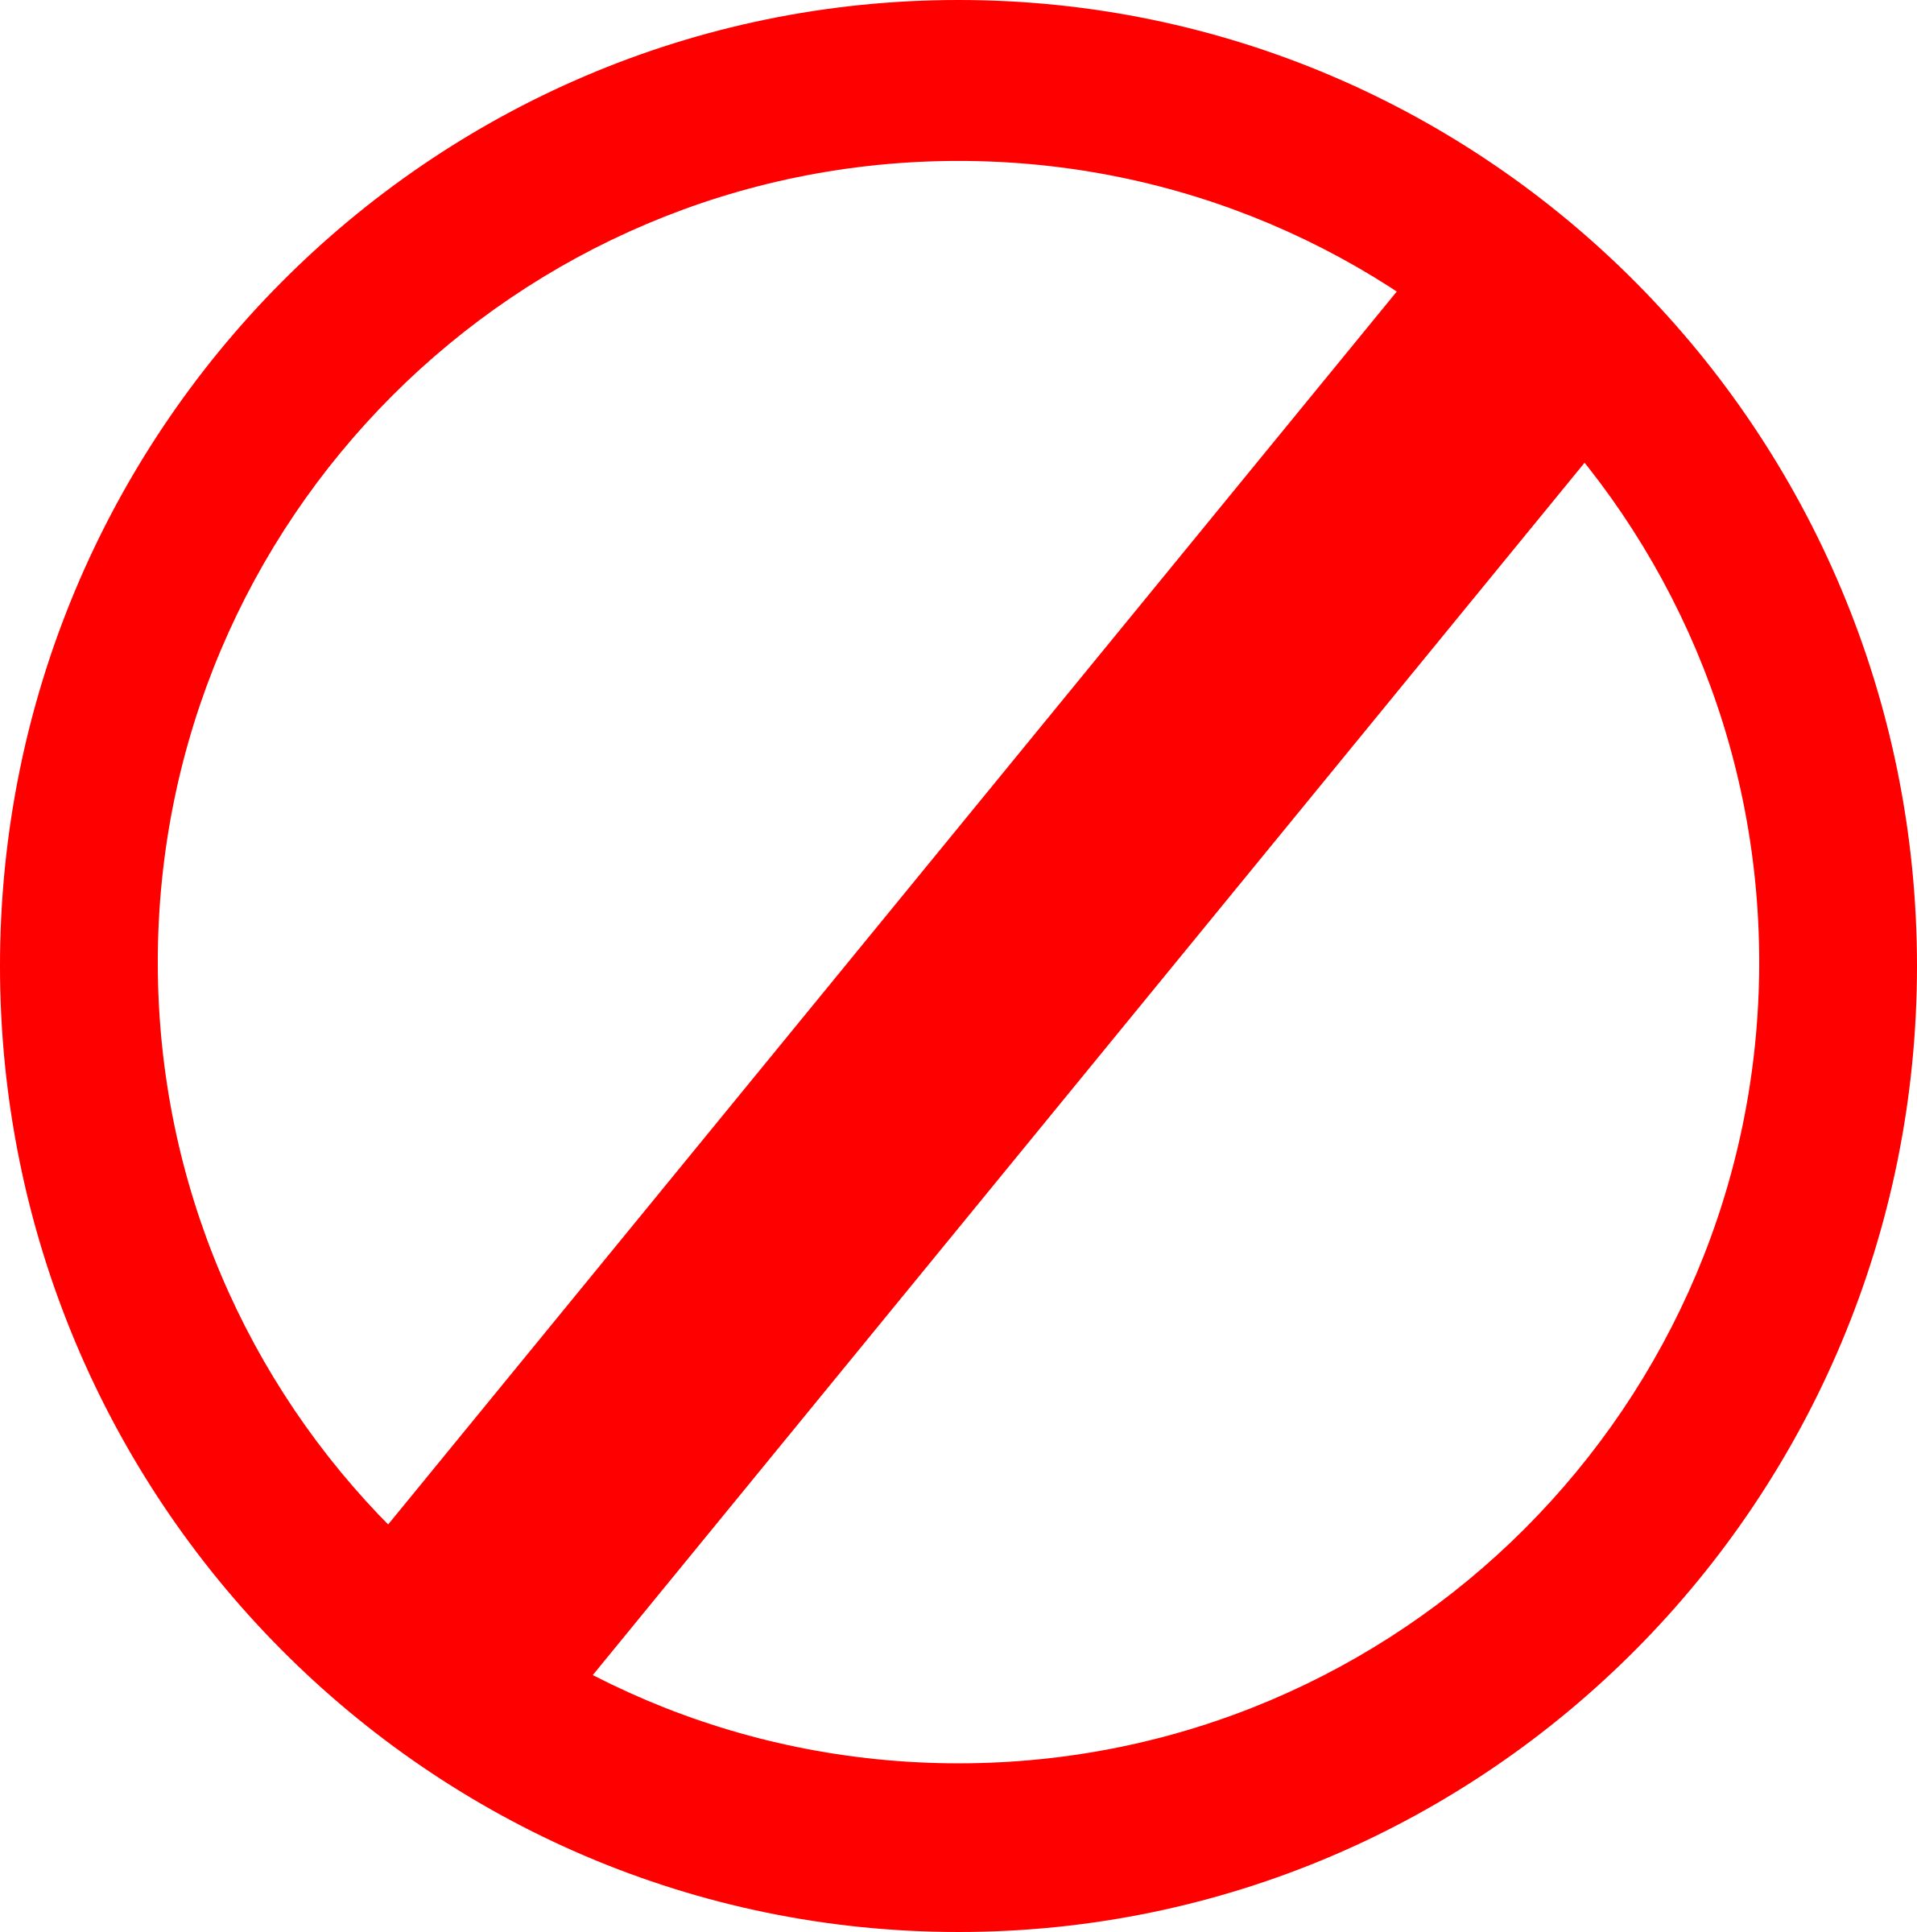 Запрещается картинки. Знак запрета. Запрещающие знаки. Запрещено на белом фоне. Красный перечеркнутый круг.